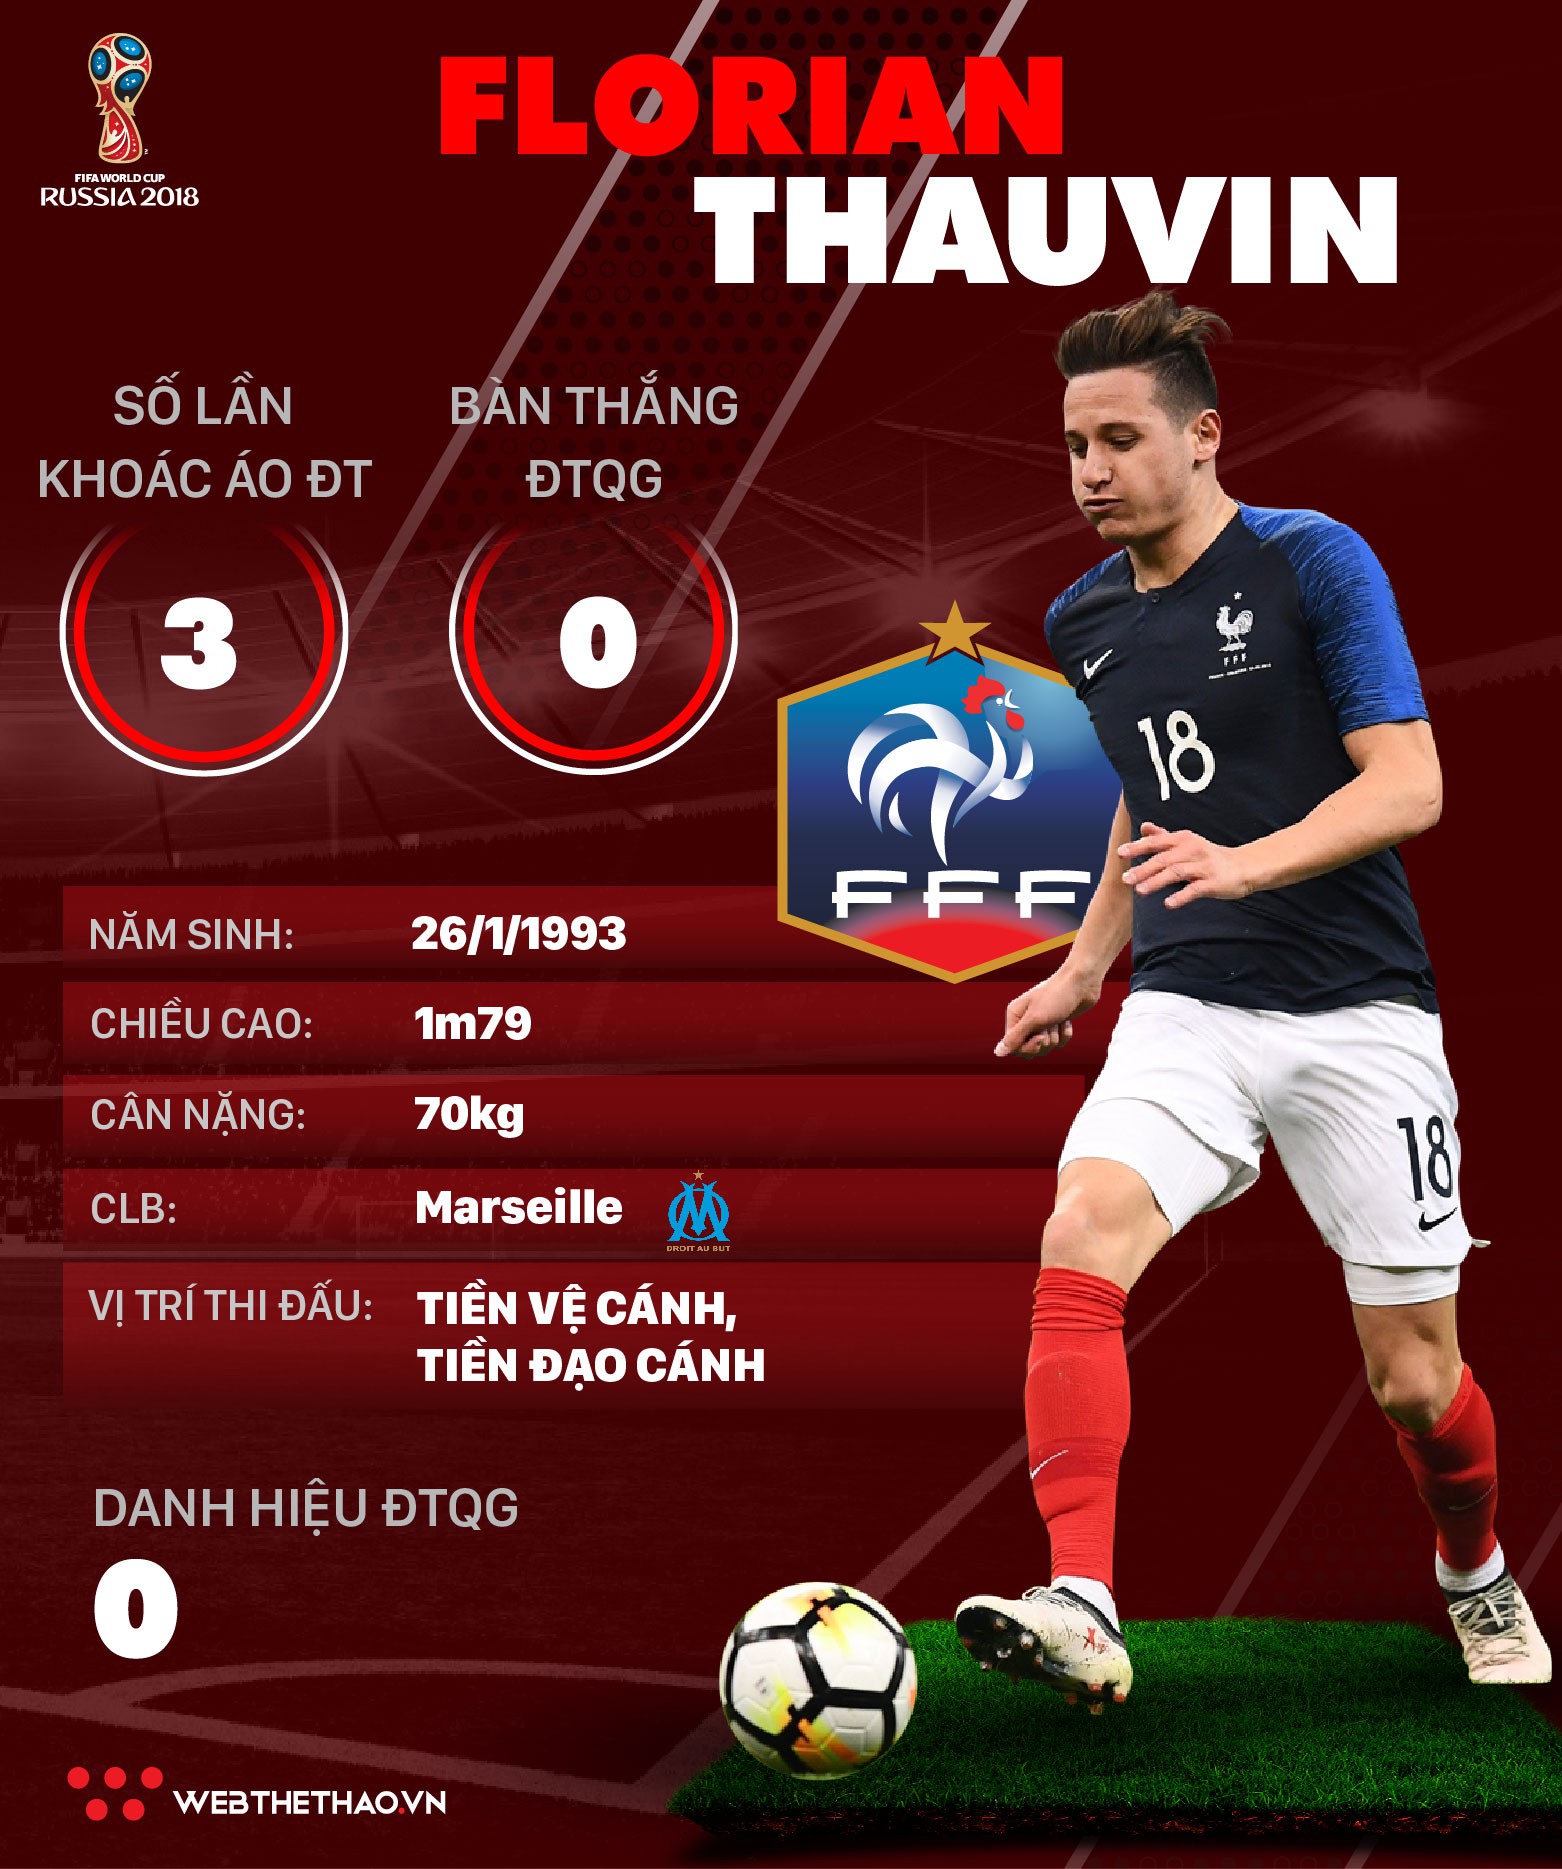 Thông tin cầu thủ Florian Thauvin của ĐT Pháp dự World Cup 2018 - Ảnh 1.